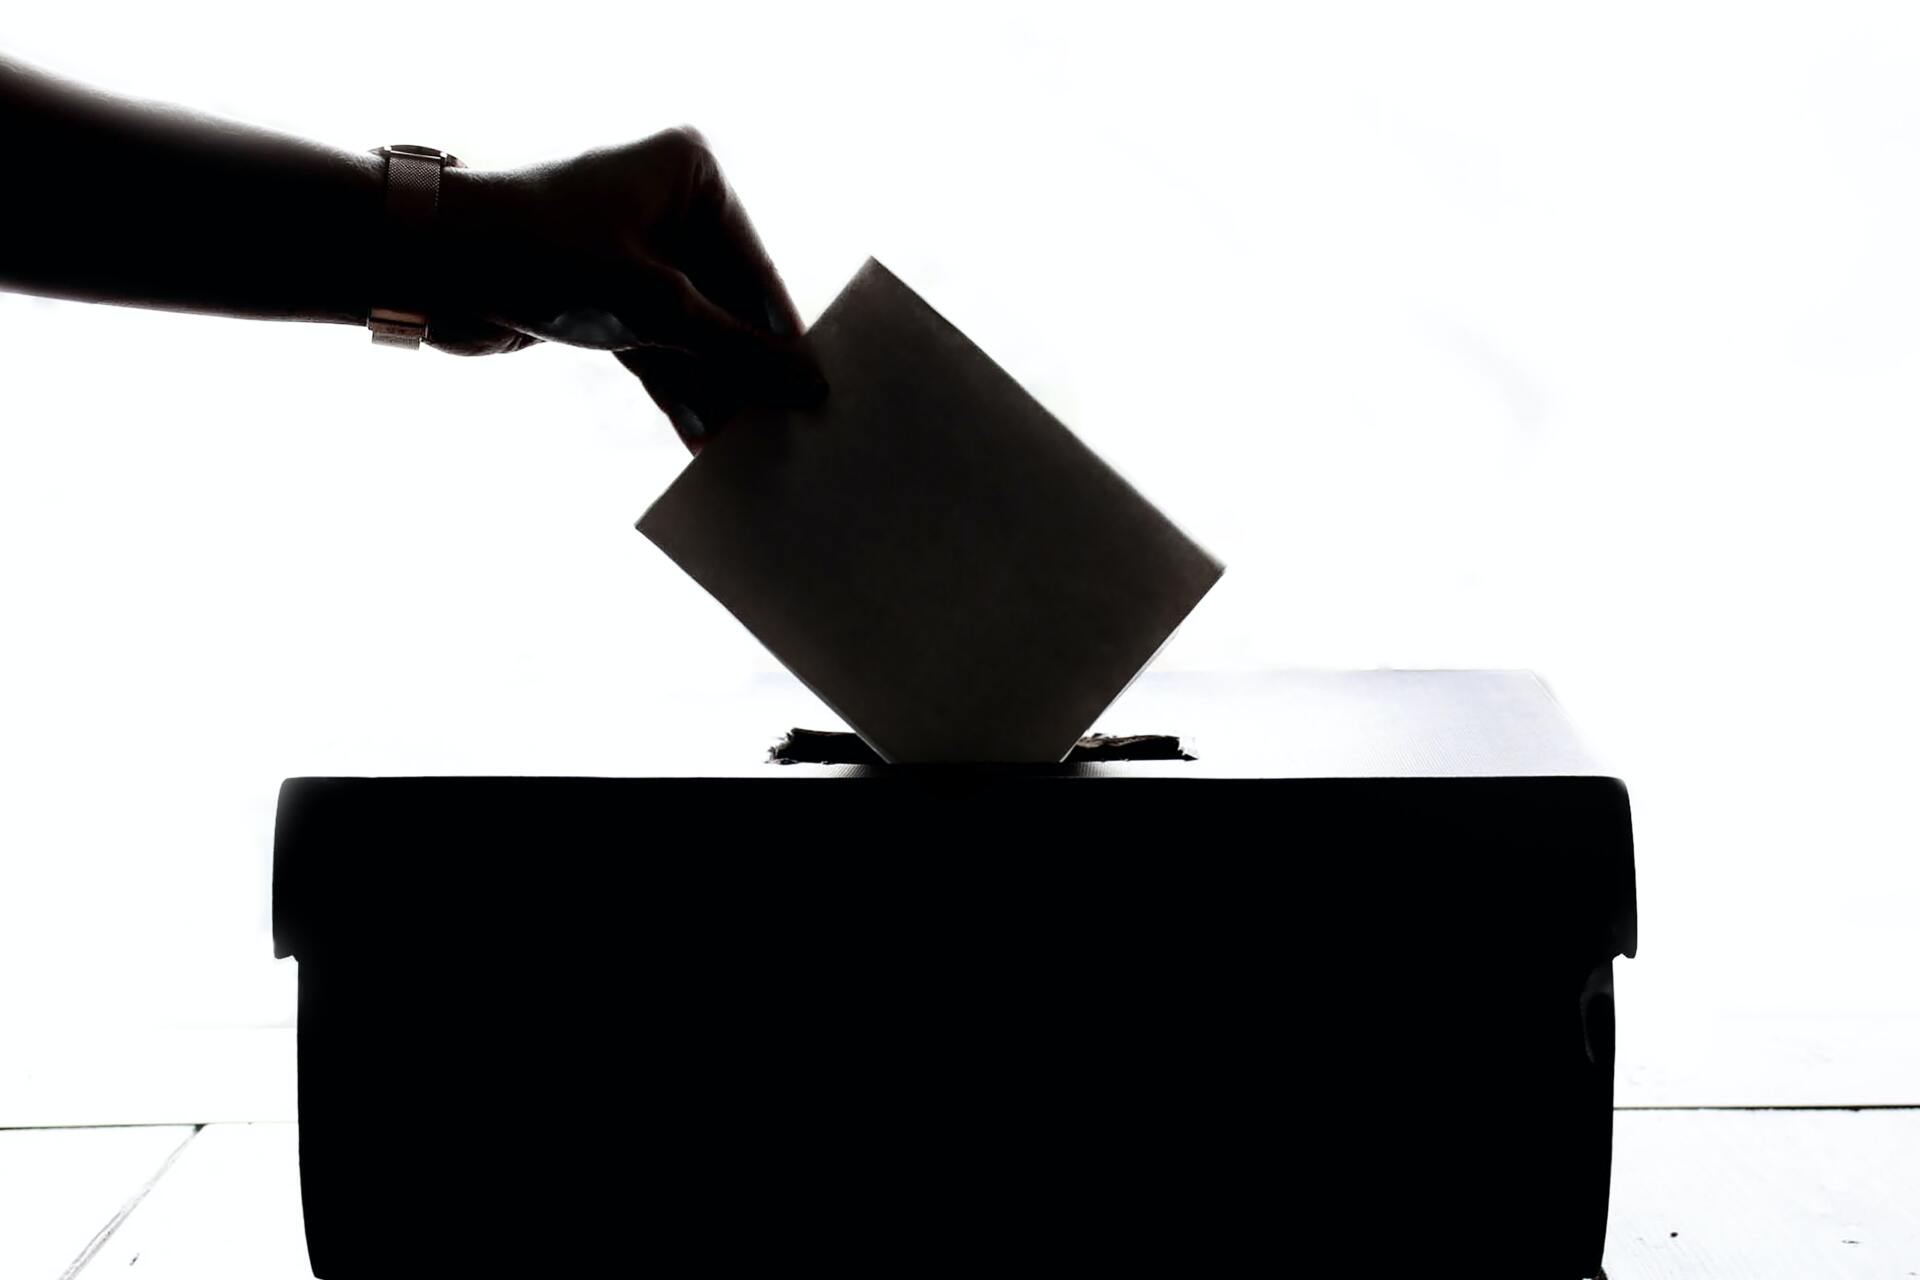 Mano introduciendo un voto en una urna electoral